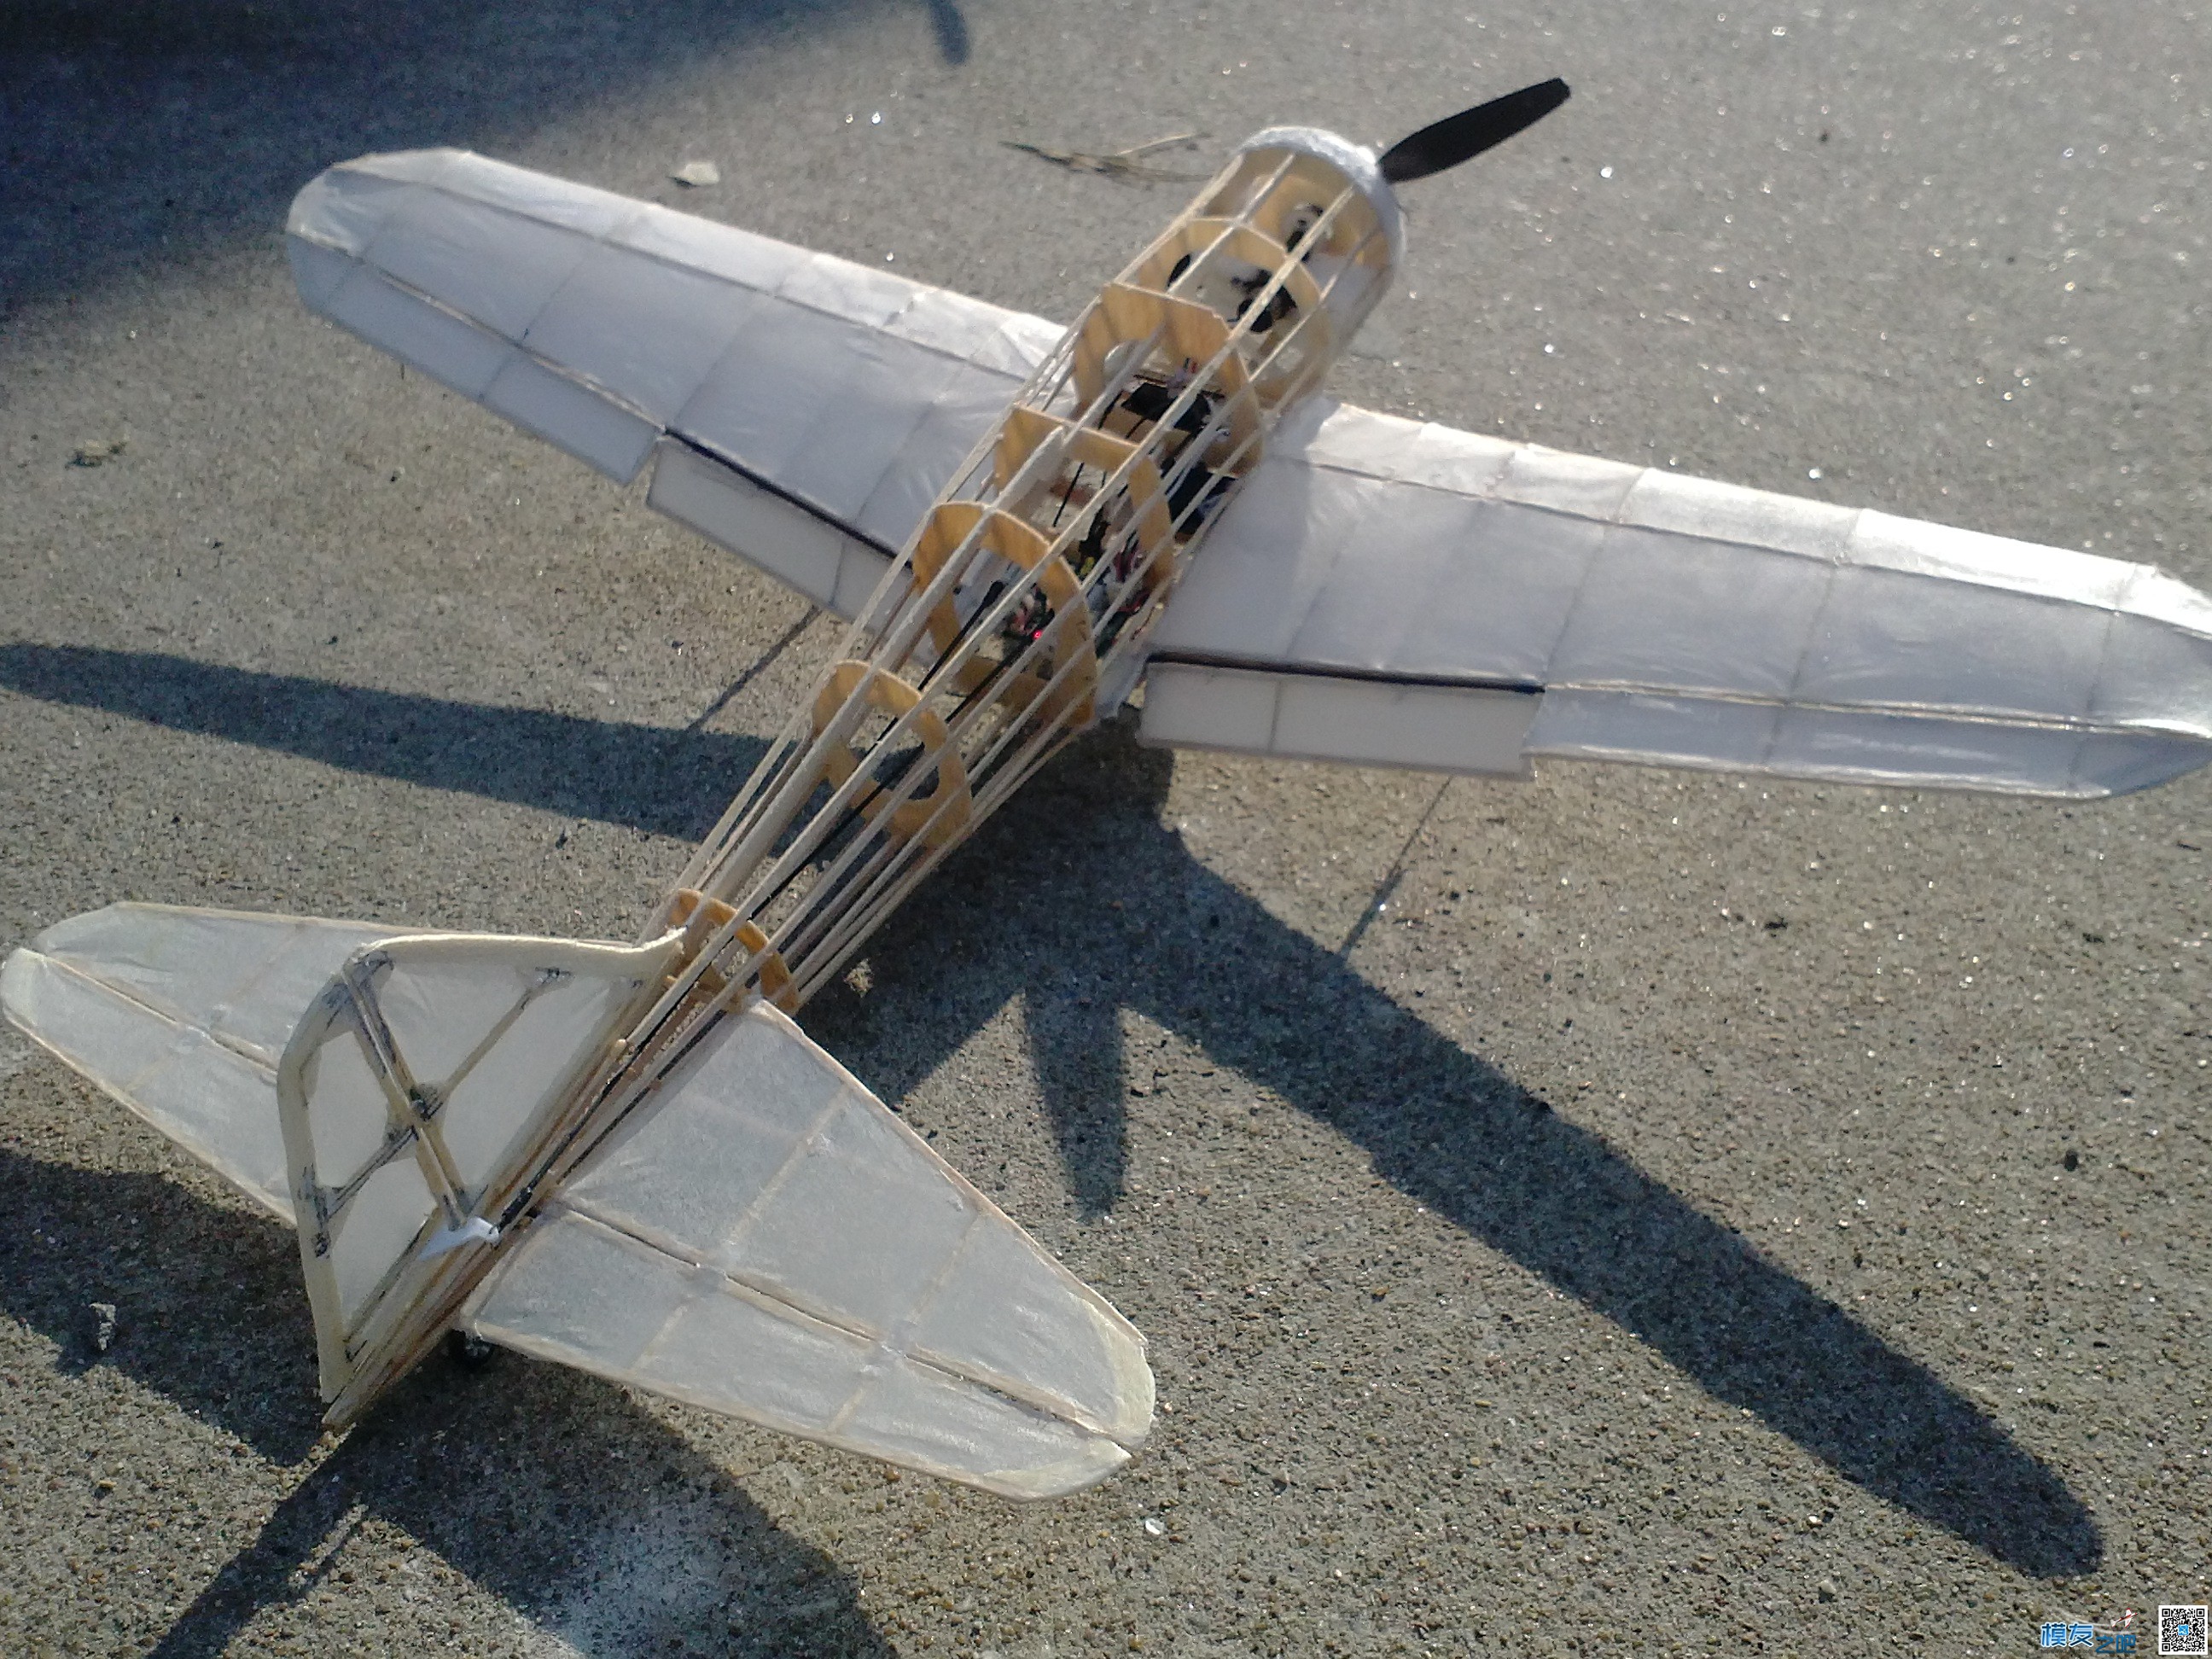 微型零战成功飞行 炸机,考研4战成功 作者:飞翔的橡皮筋 1130 